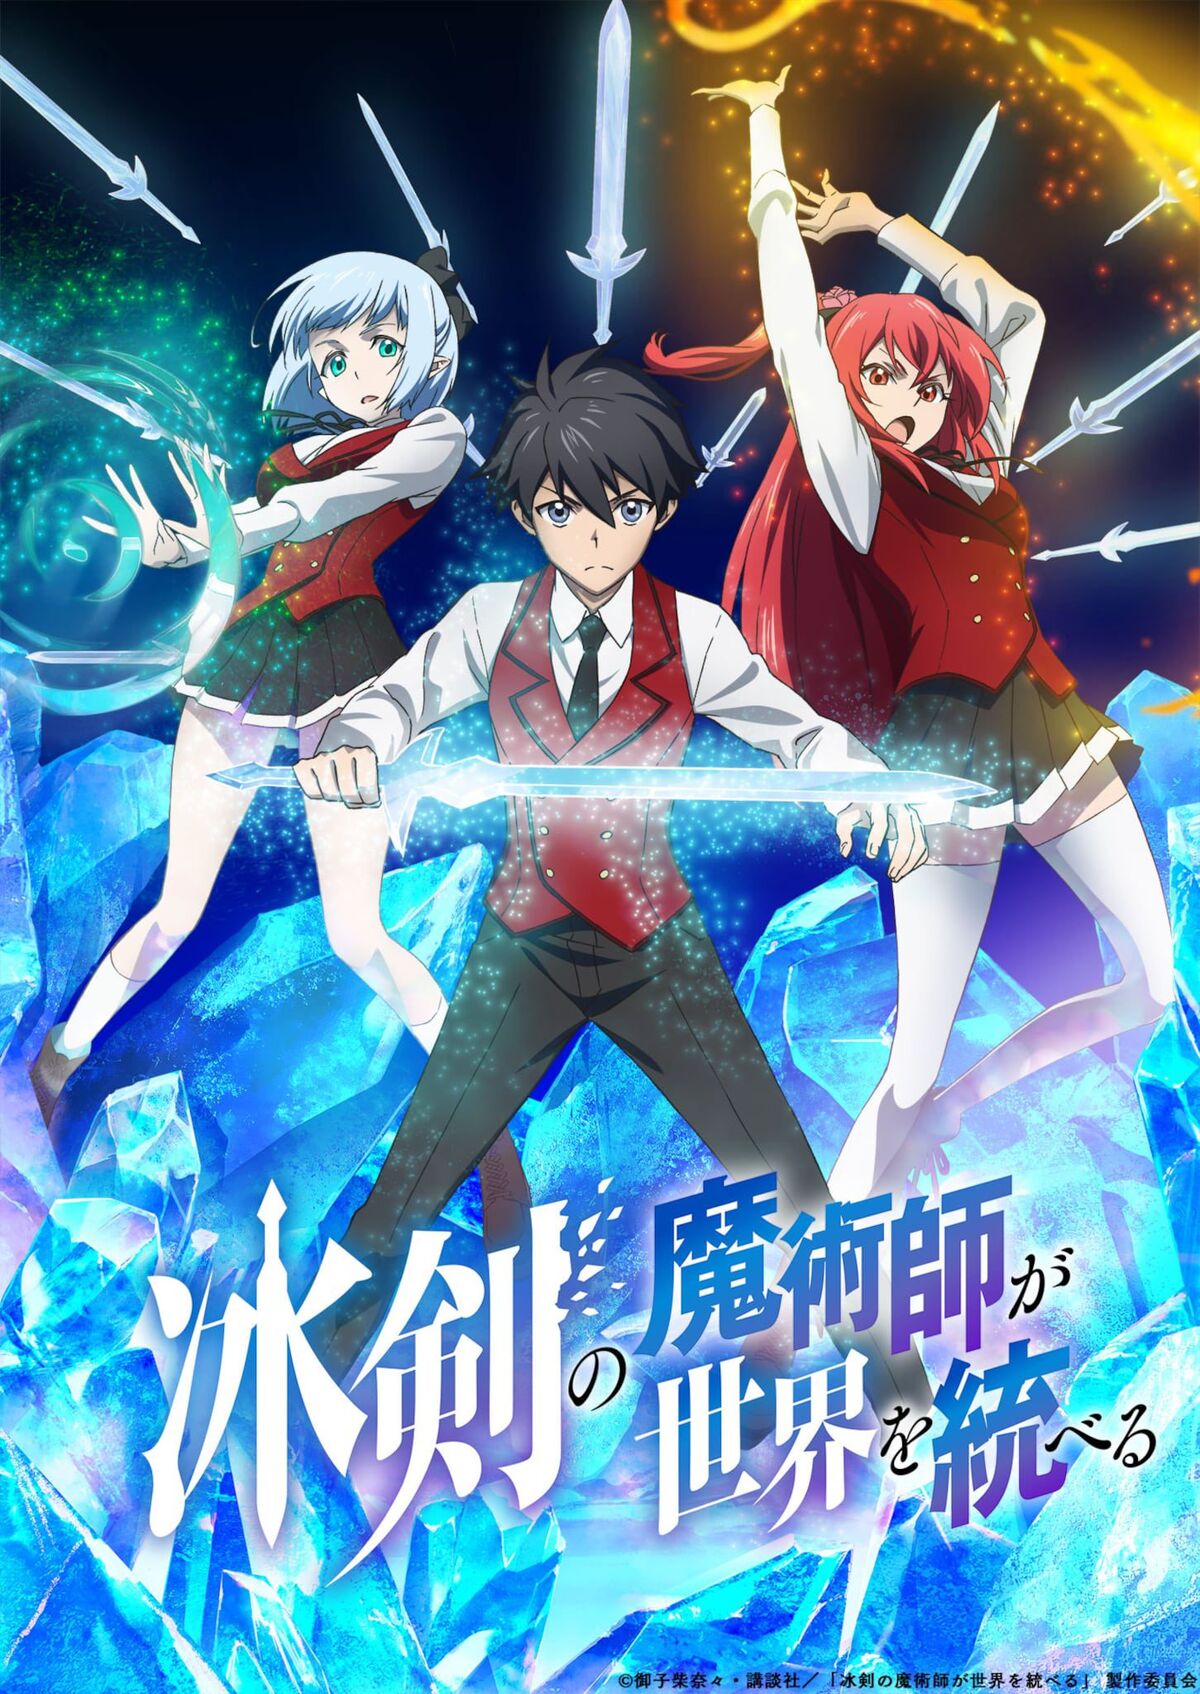 Hyouken no Majutsushi ga Sekai wo Suberu - Episódio 2 - Animes Online